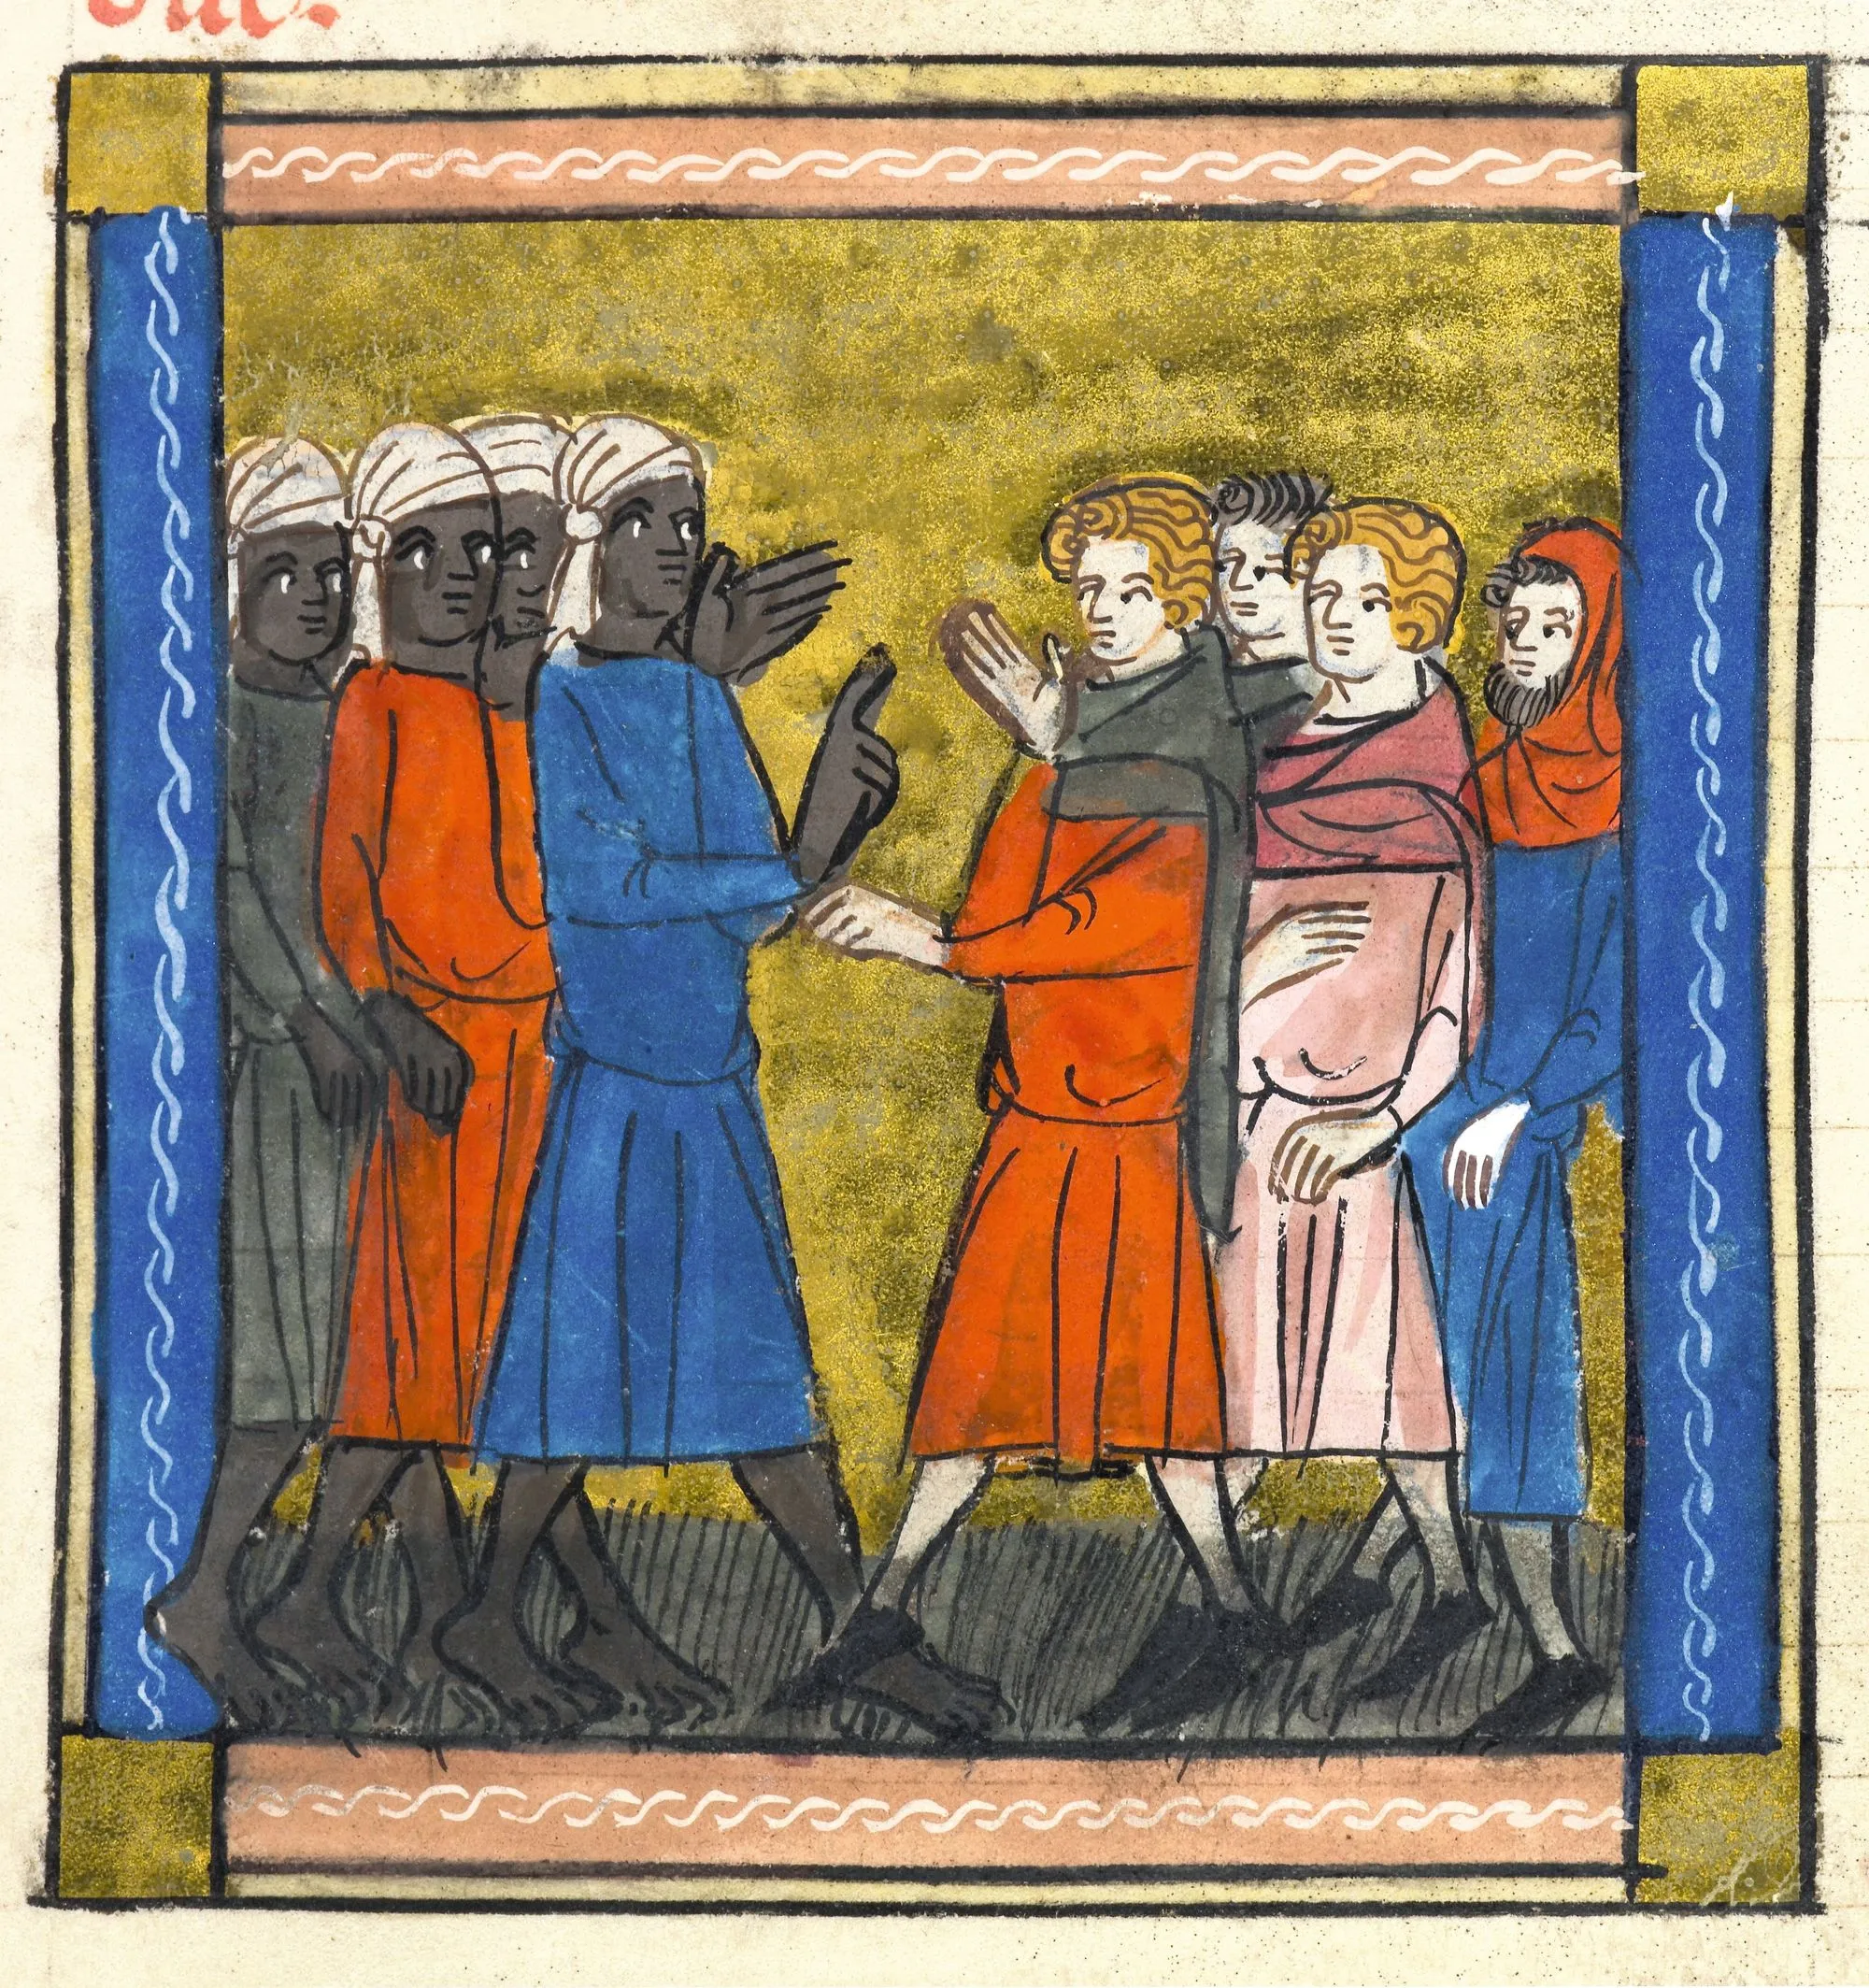 Sarrasins et chrétiens, enluminure dans un manuscrit du Roman d'Alexandre, v. 1340, British Library, Londres